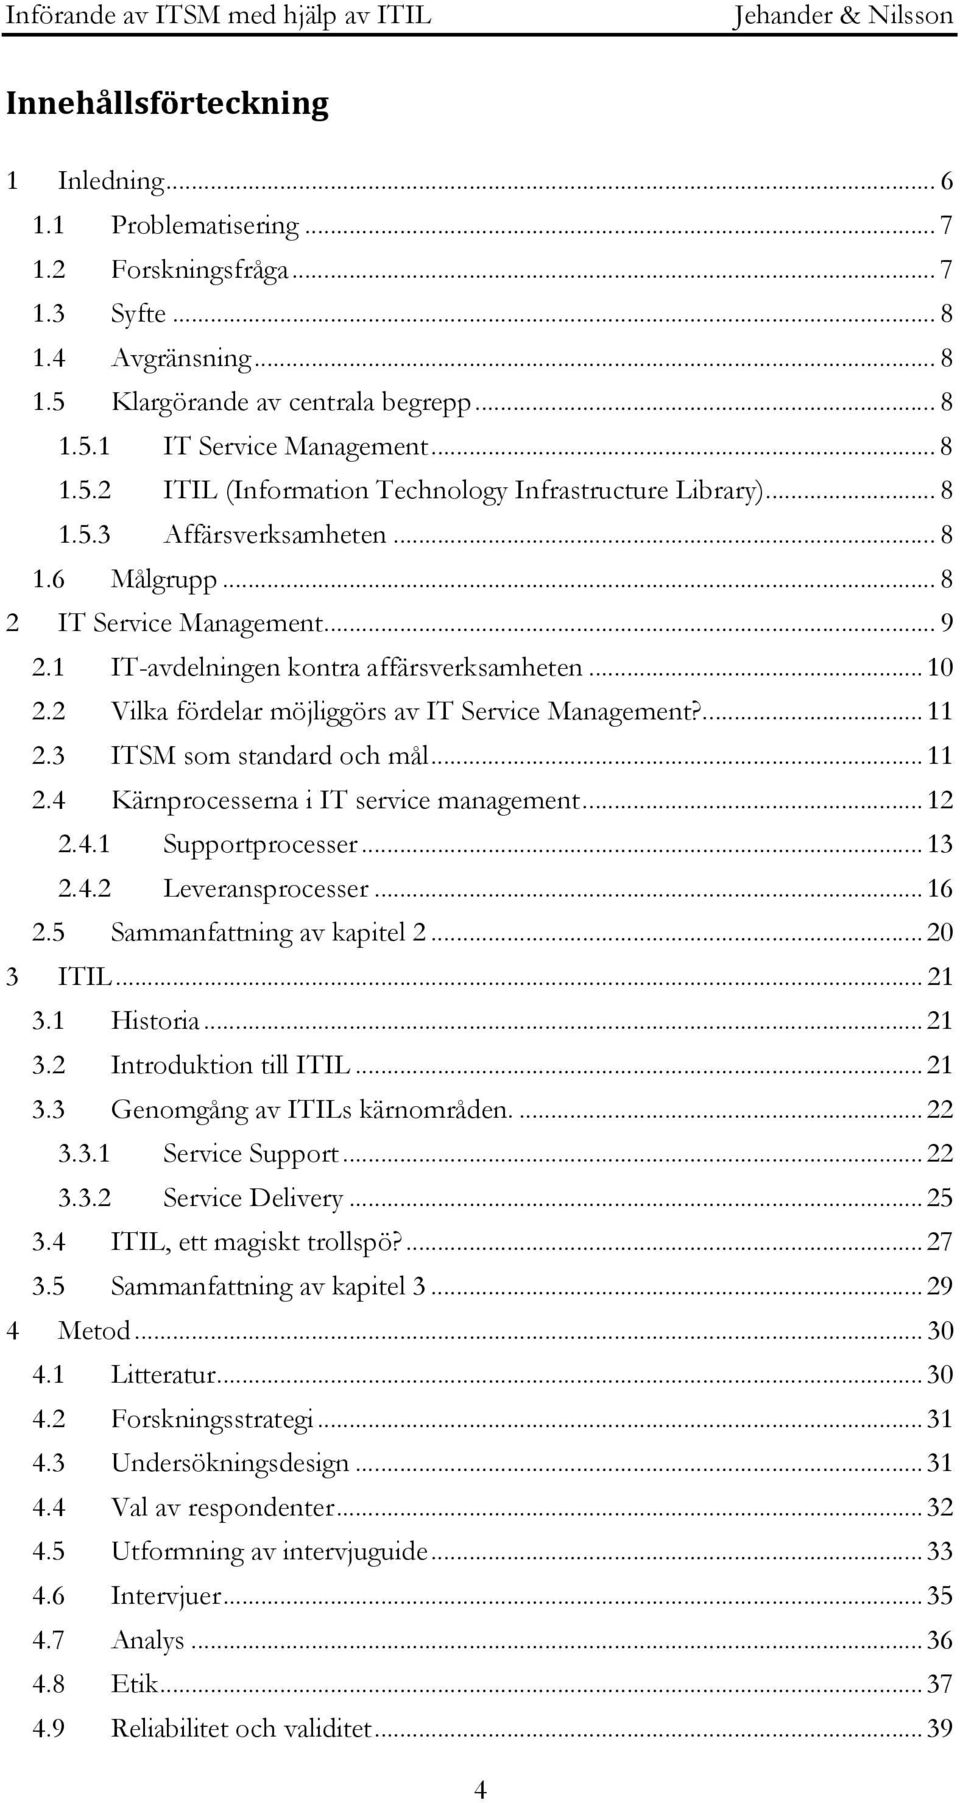 3 ITSM som standard och mål... 11 2.4 Kärnprocesserna i IT service management... 12 2.4.1 Supportprocesser... 13 2.4.2 Leveransprocesser... 16 2.5 Sammanfattning av kapitel 2... 20 3 ITIL... 21 3.